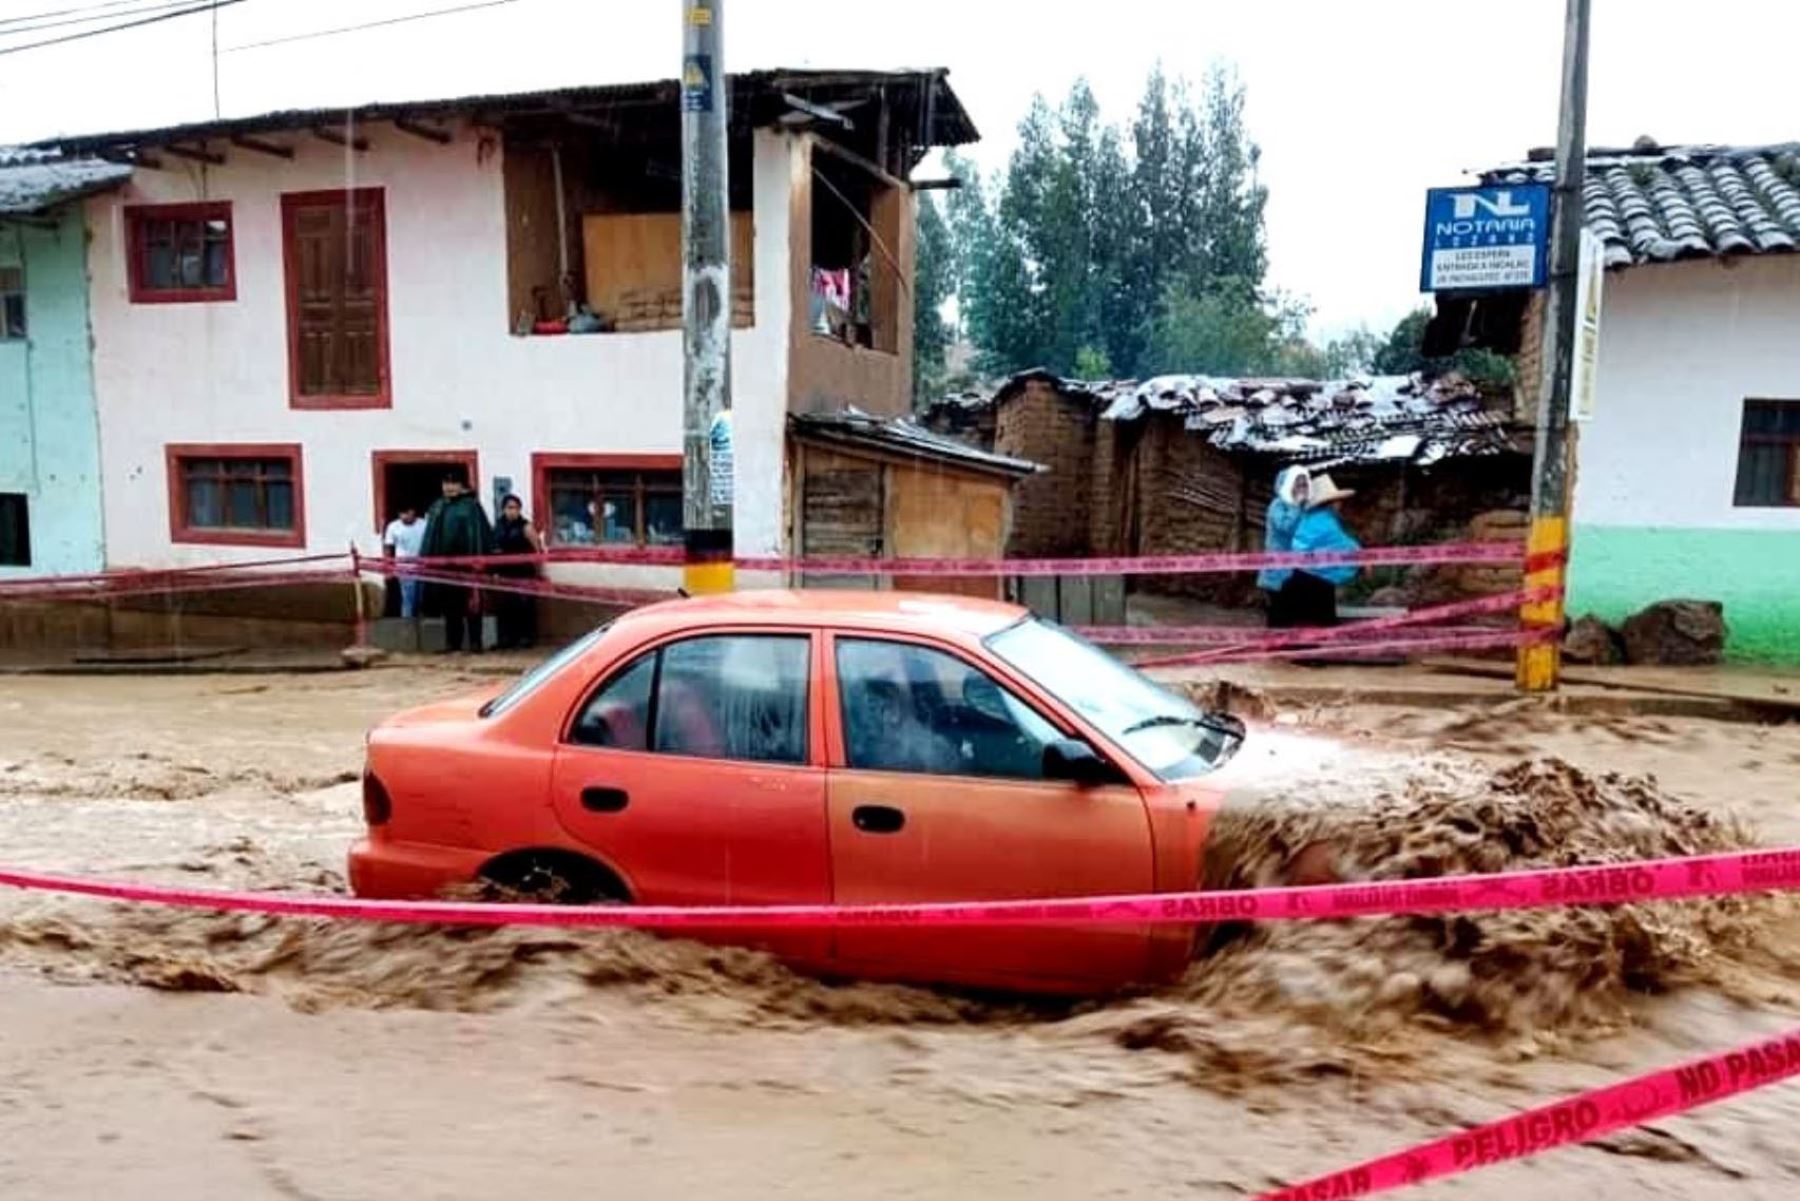 Lluvias intensas activan quebradas y afectan al menos a cinco viviendas rústicas en el distrito de Los Baños del Inca, región Cajamarca. ANDINA/Difusión